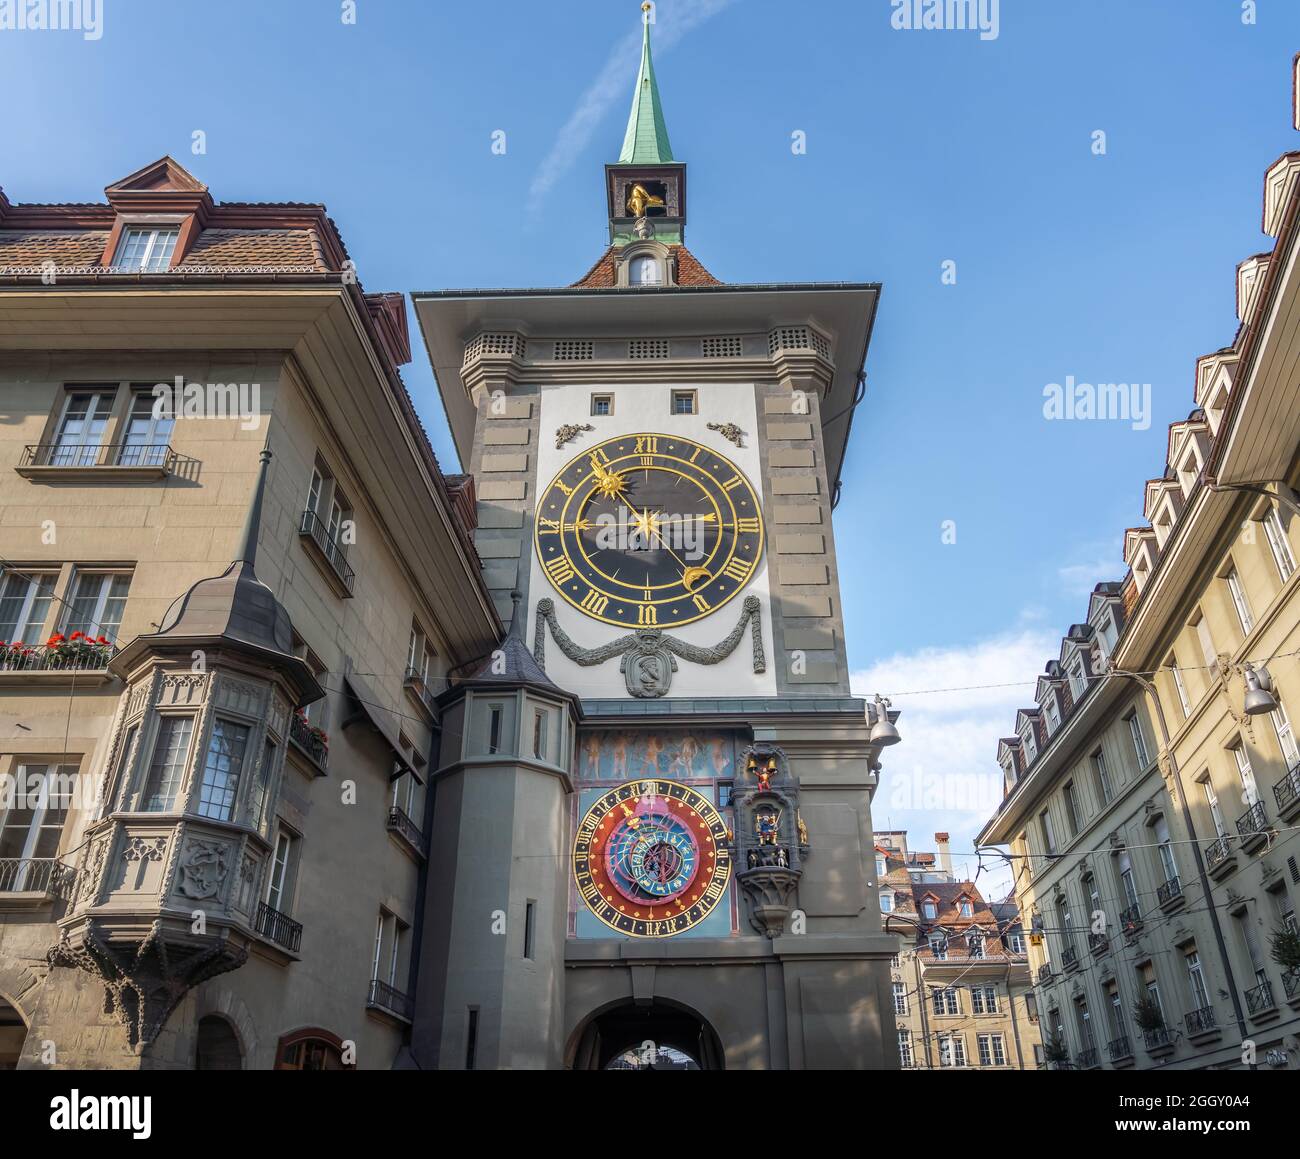 Facciata orientale di Zytglogge con l'Orologio Astronomico - Orologio medievale a torre - Berna, Svizzera Foto Stock